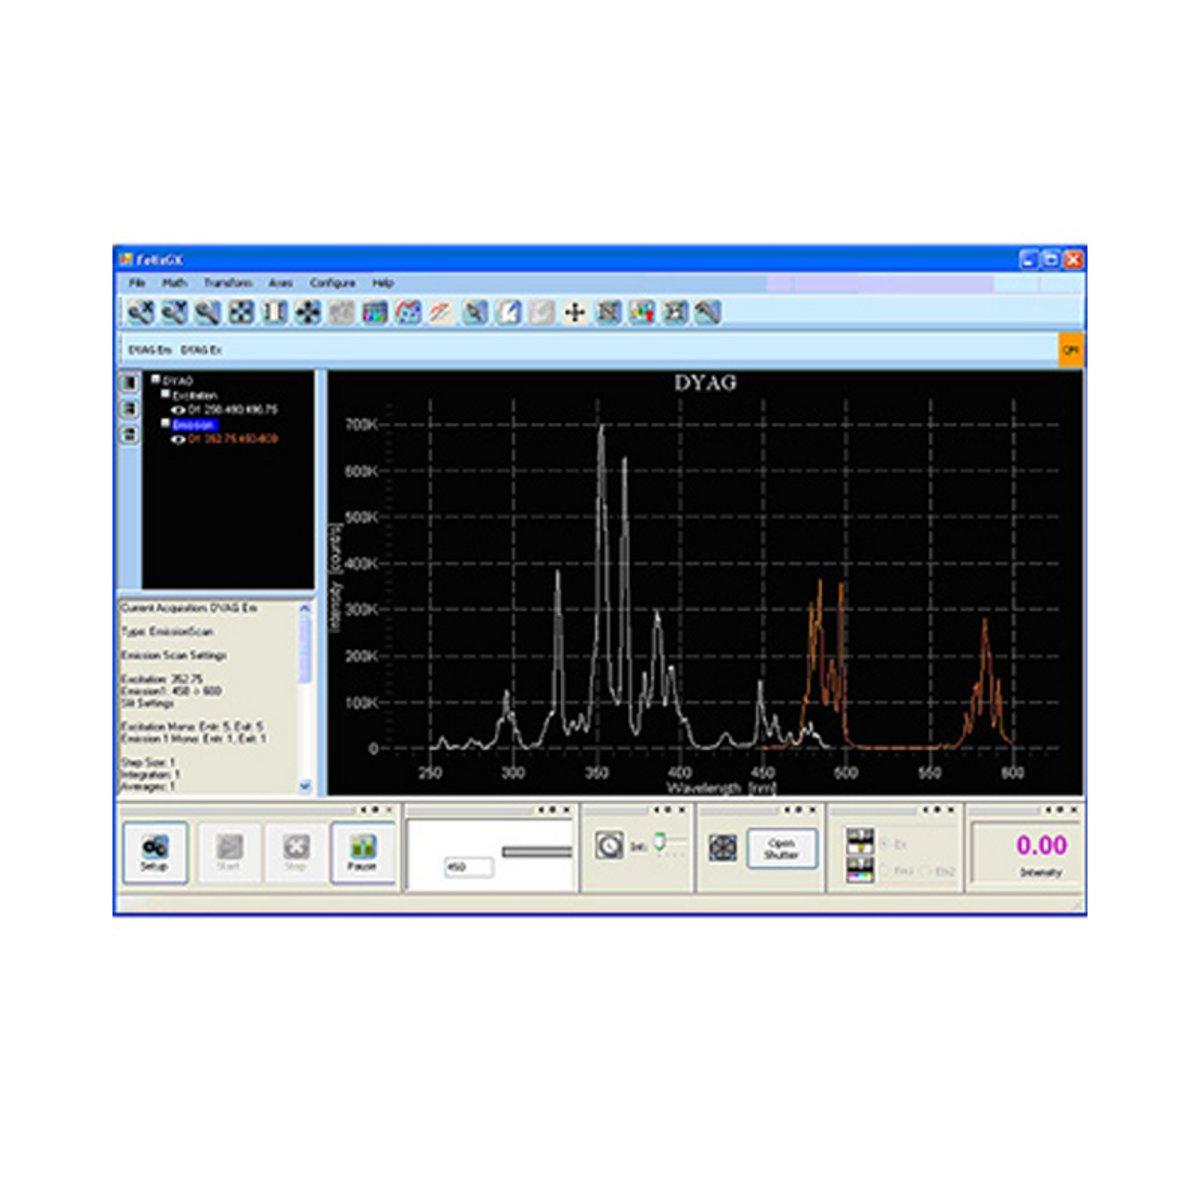 ImaQuest Fingerprint Enhancement Software - HORIBA